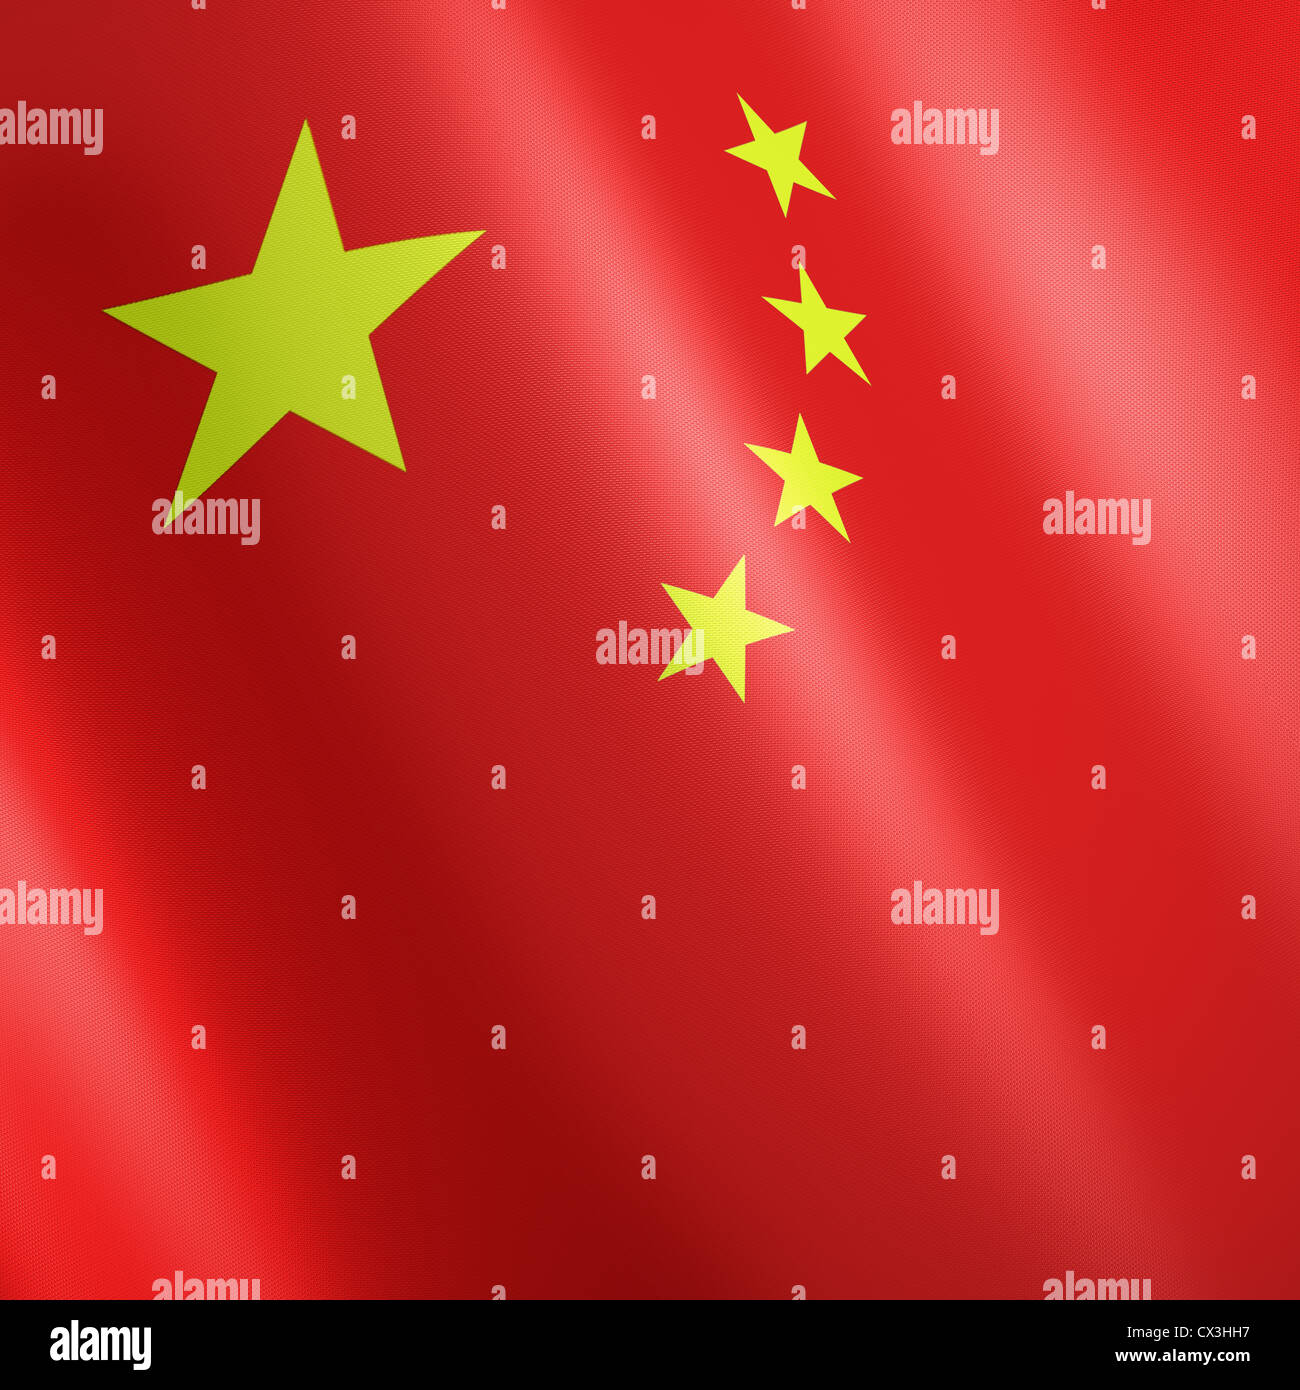 Chinesische Fahne mit rotem gelben Sternen auf Grund - pabellón de China con estrellas amarillas sobre rojo Foto de stock